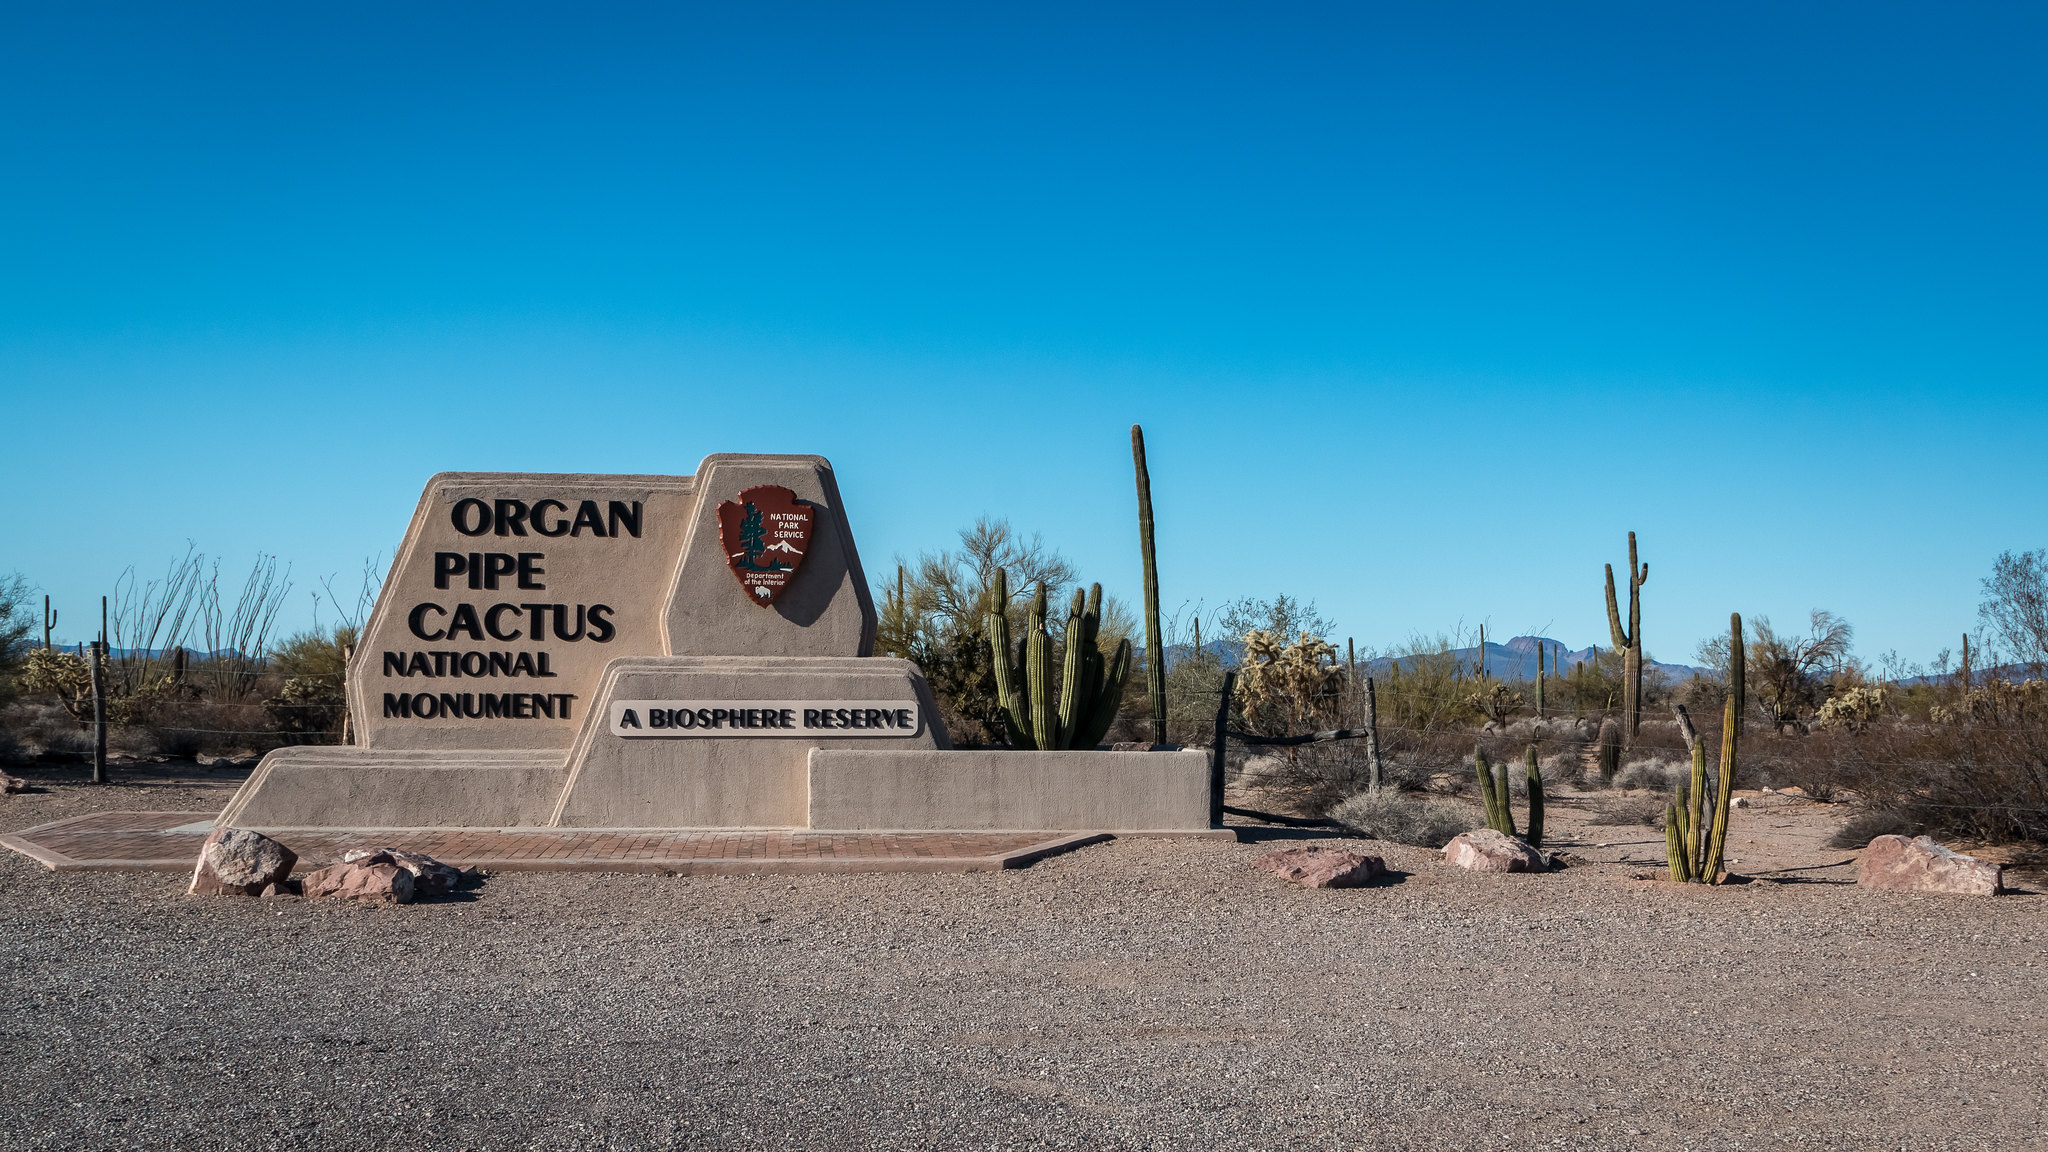 Organ Pipe Cactus NM - Arizona - [USA]